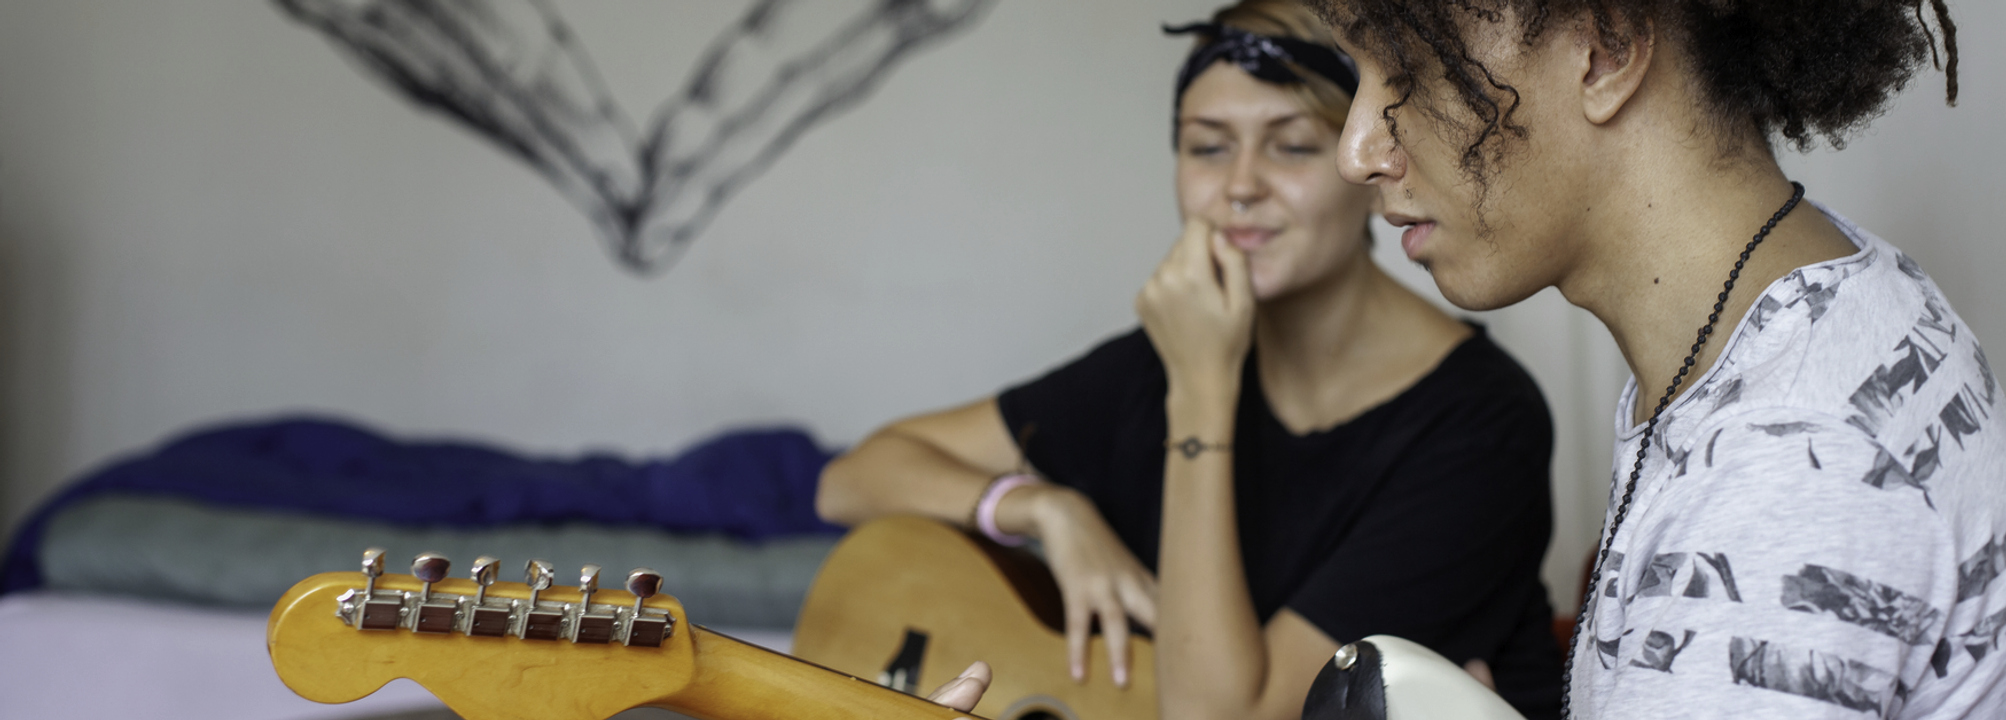 Två tonåringar spelar gitarr i ett sovrum.